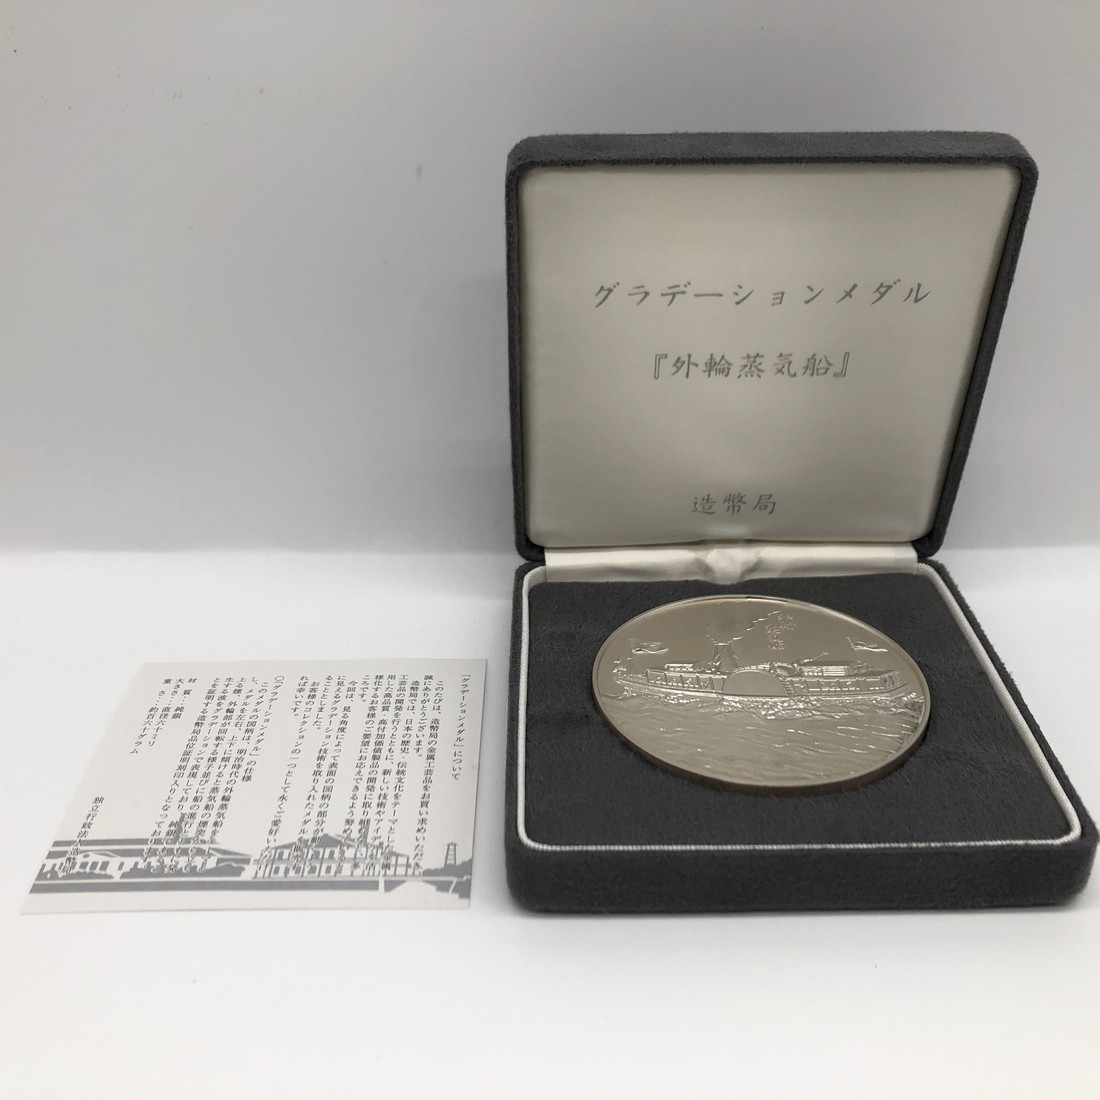 海】純銀メダル 奄美群島復帰五十周年貨幣発行記念メダル-